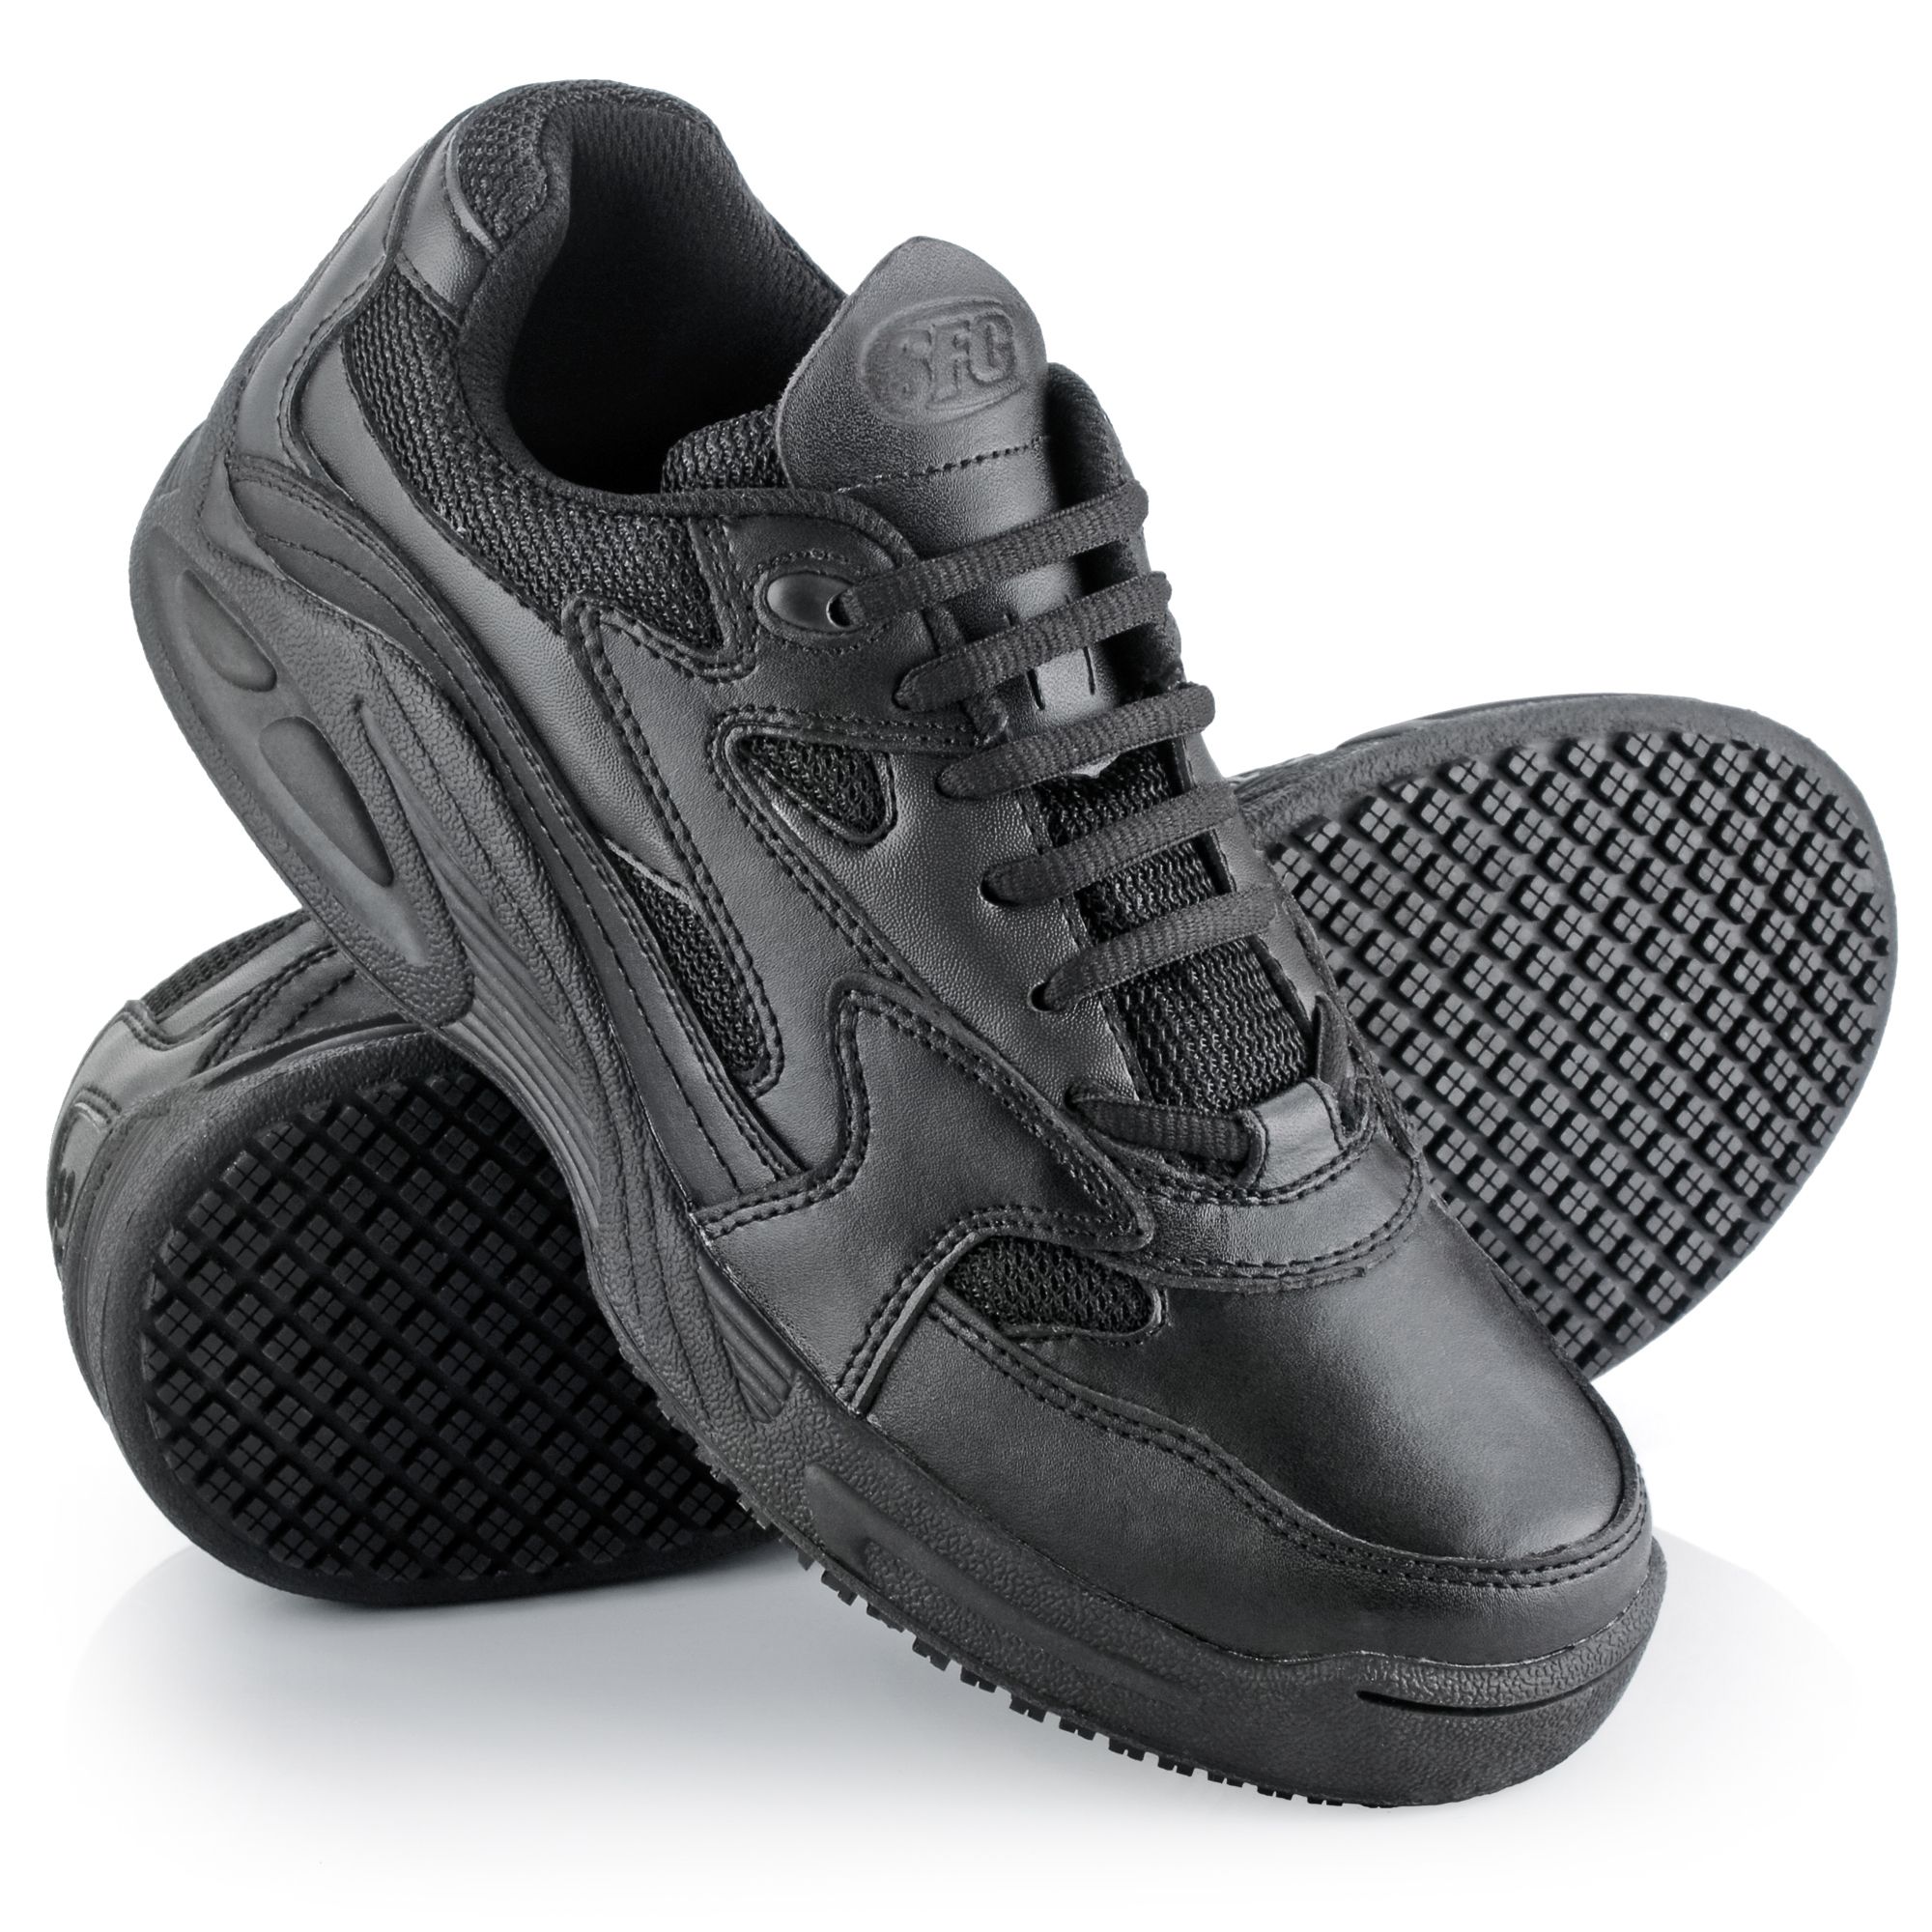 black slip resistant tennis shoes